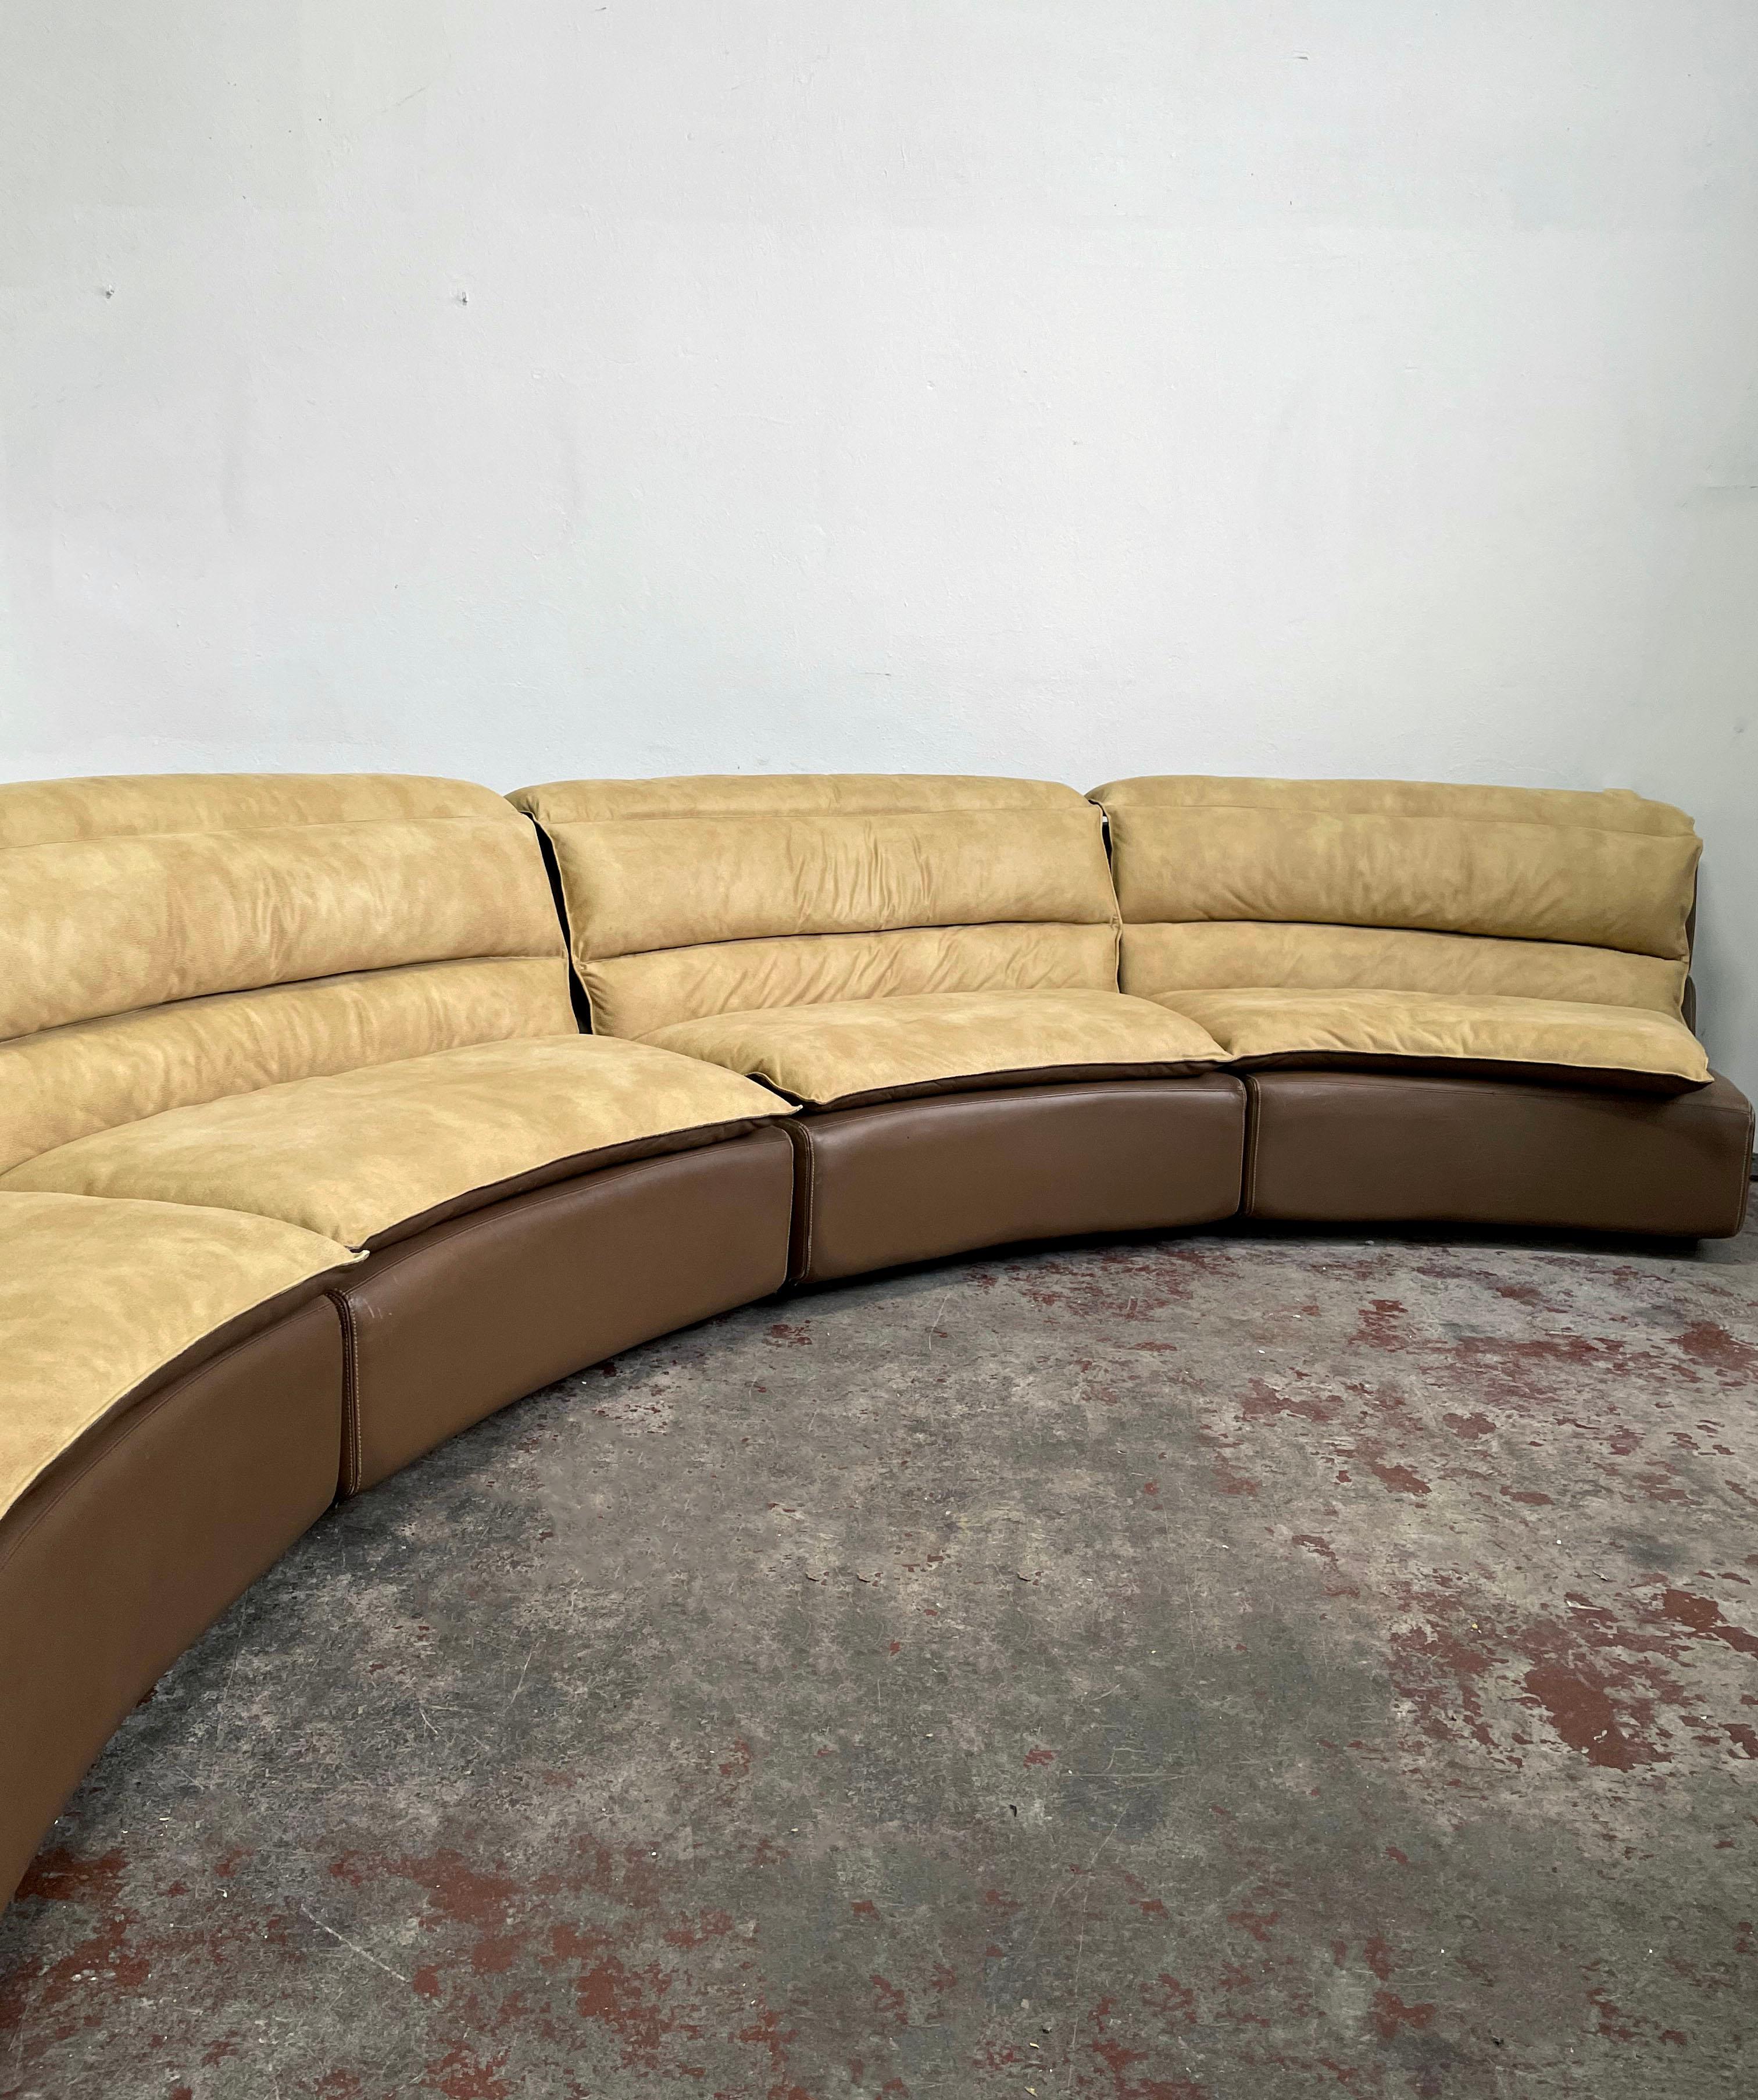 Italian Suede and Leather Sectional Sofa 'Bogo', Carlo Bartoli for Rossi di Albizzate